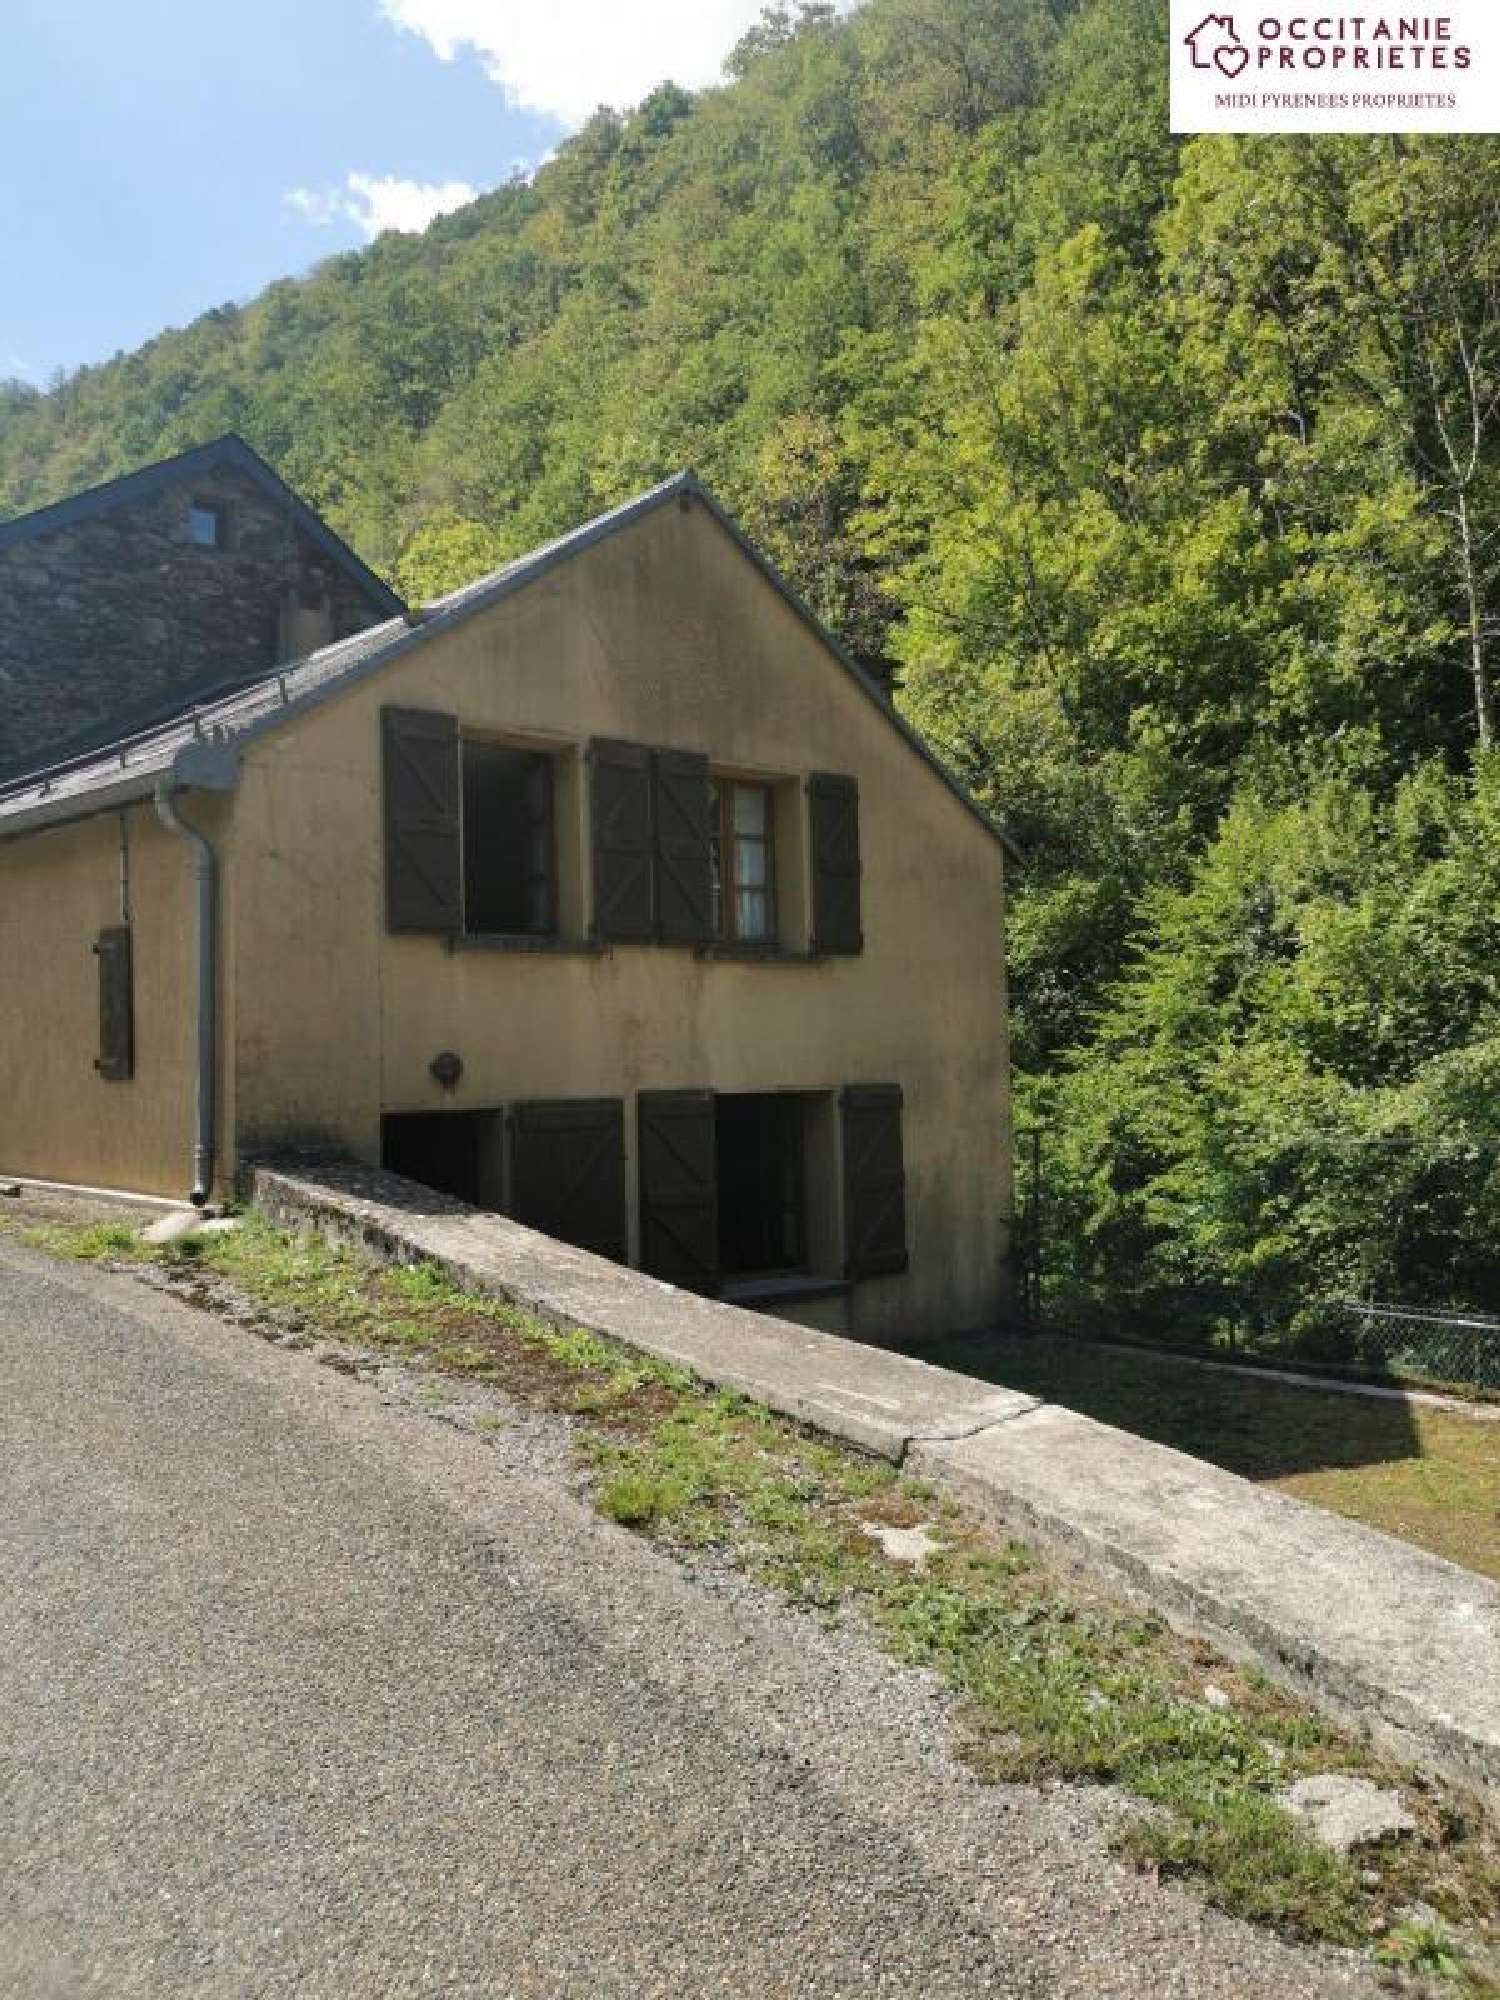  à vendre maison Couflens Ariège 3